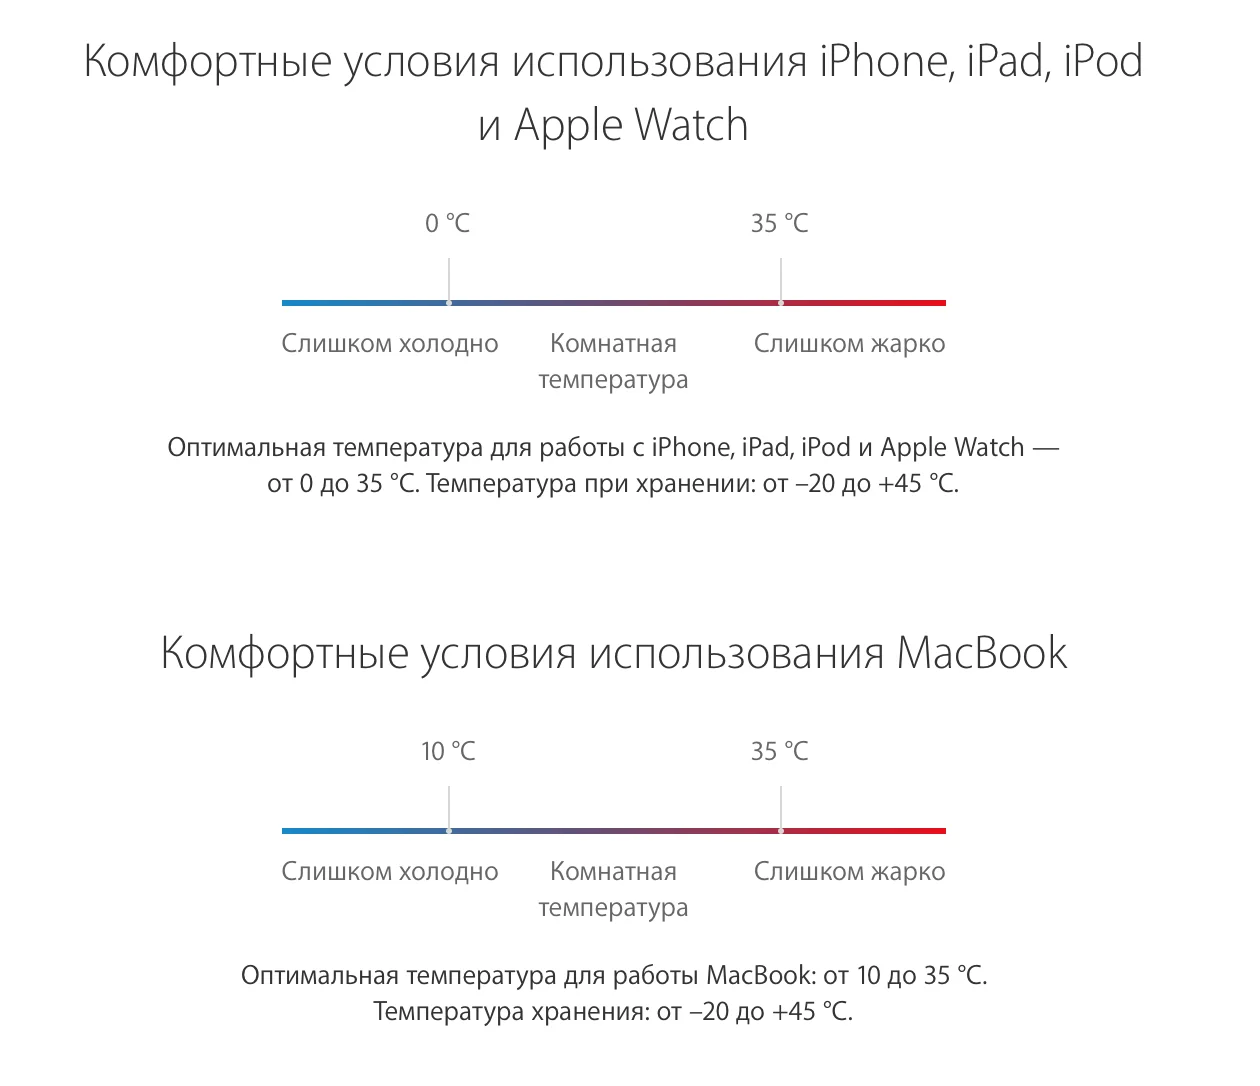 Apple советует не доставать iPhone на улице зимой. Как продлить срок службы батареи? - фото 3